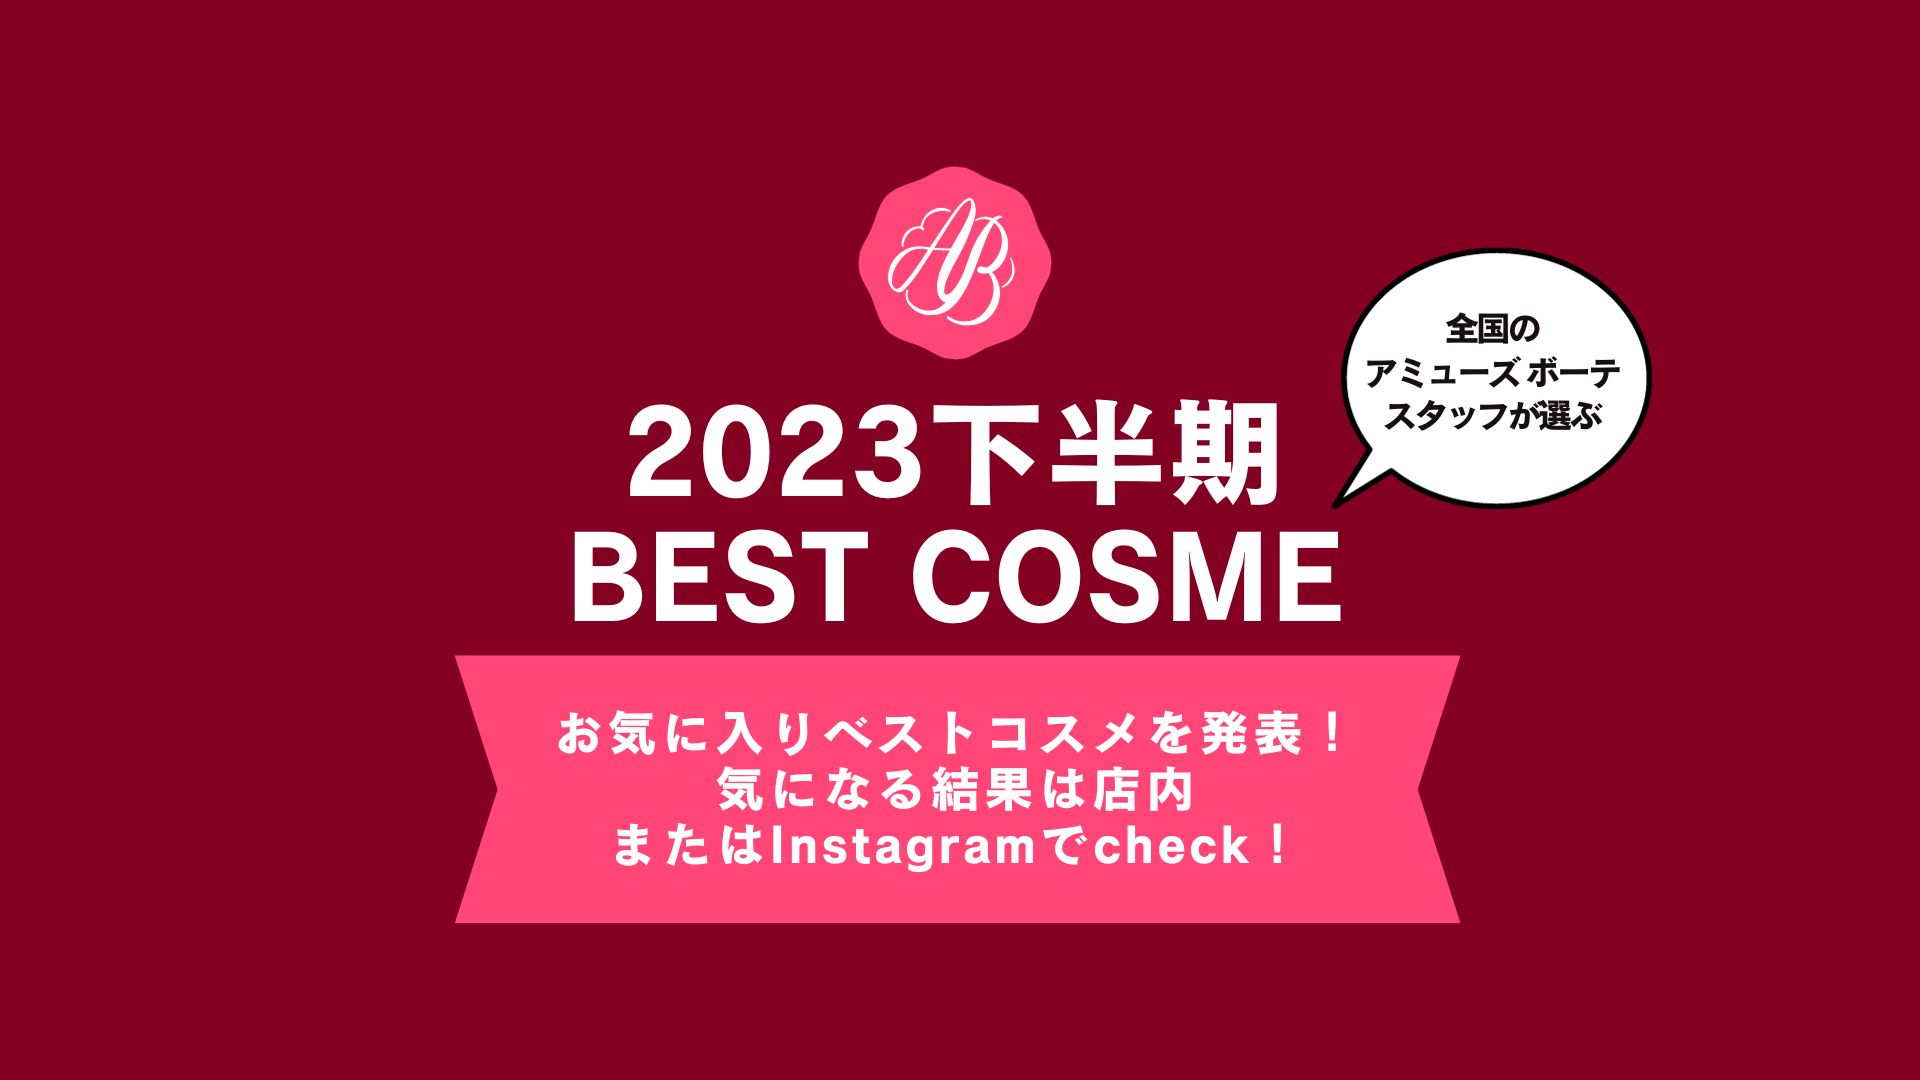 【アミューズ ボーテ 2023下半期 BEST COSME】店頭と公式Instagramで発表中!!